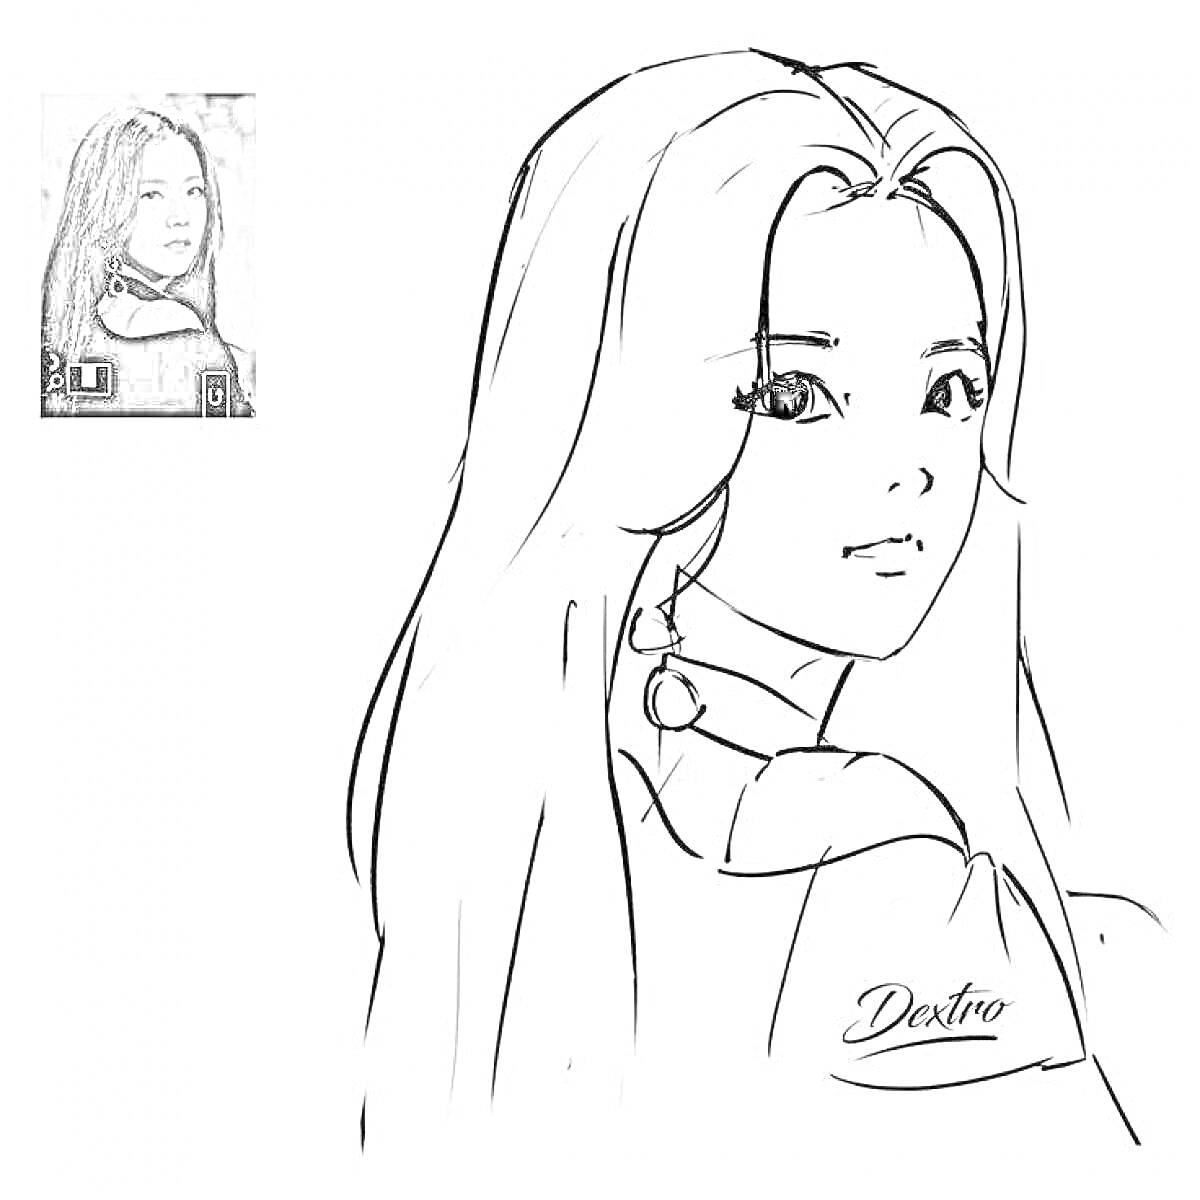 Раскраска Портрет девушки с длинными распущенными волосами в стилистике Blackpink, с фотографией референса в левом верхнем углу и подписью 